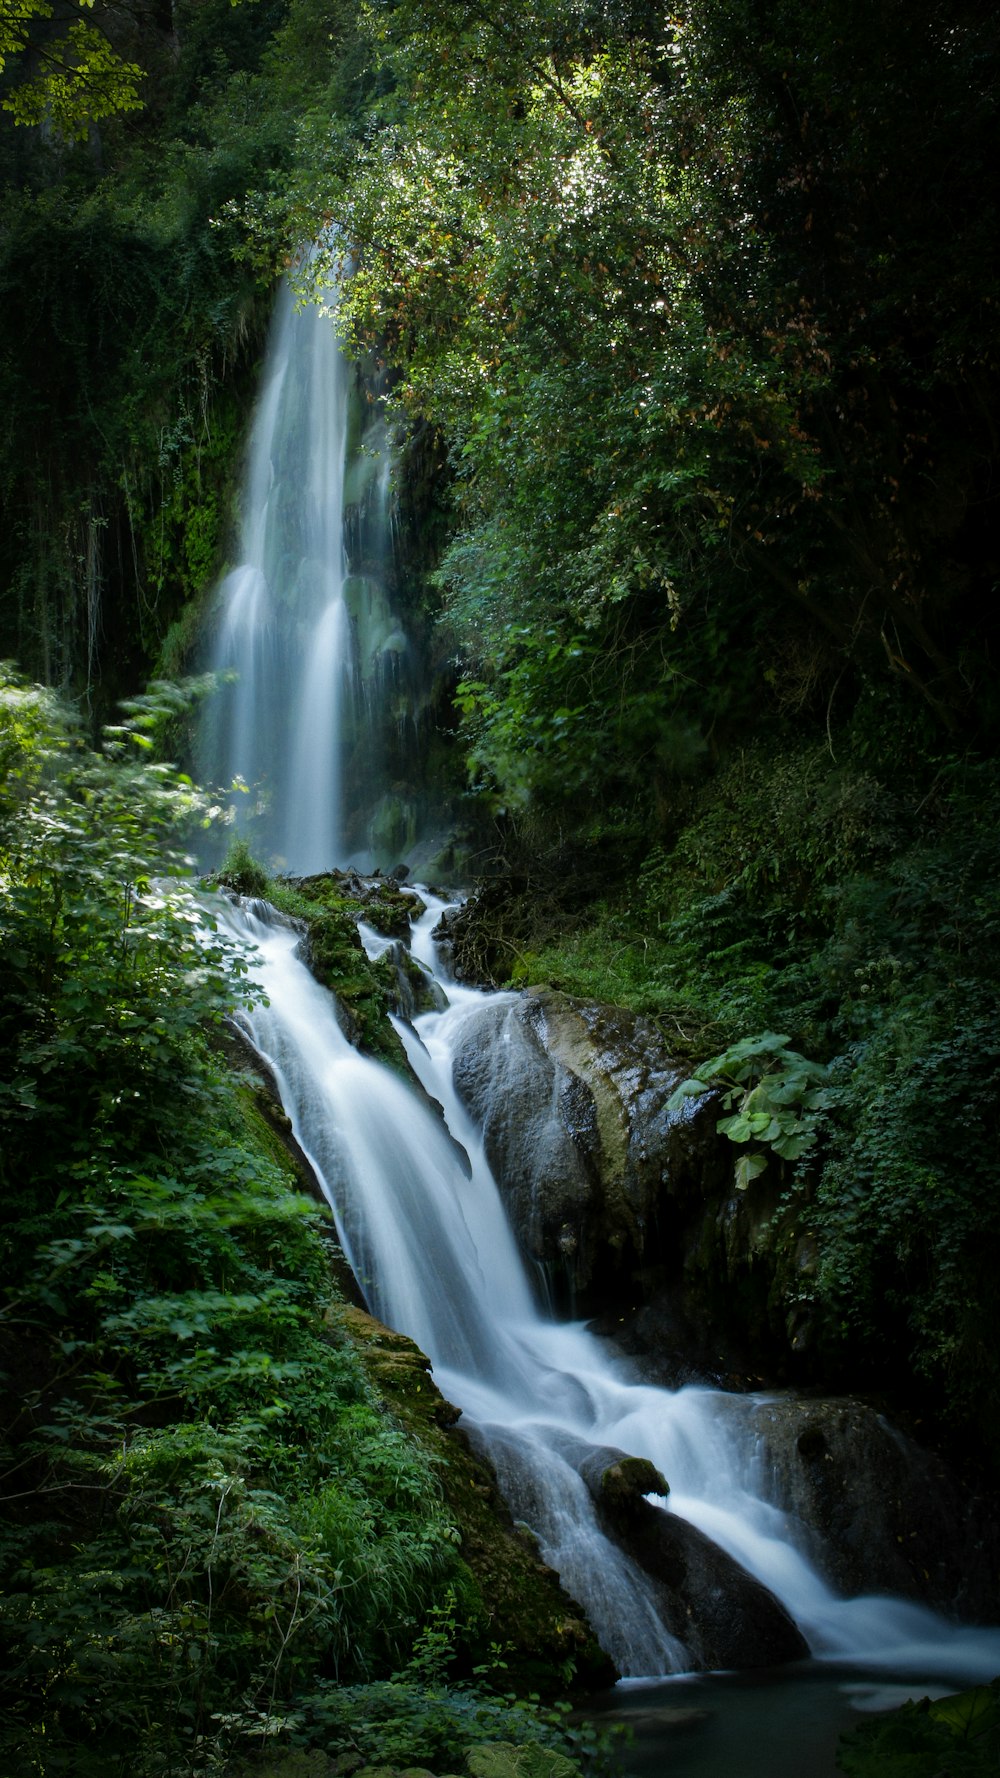 waterfalls between forest